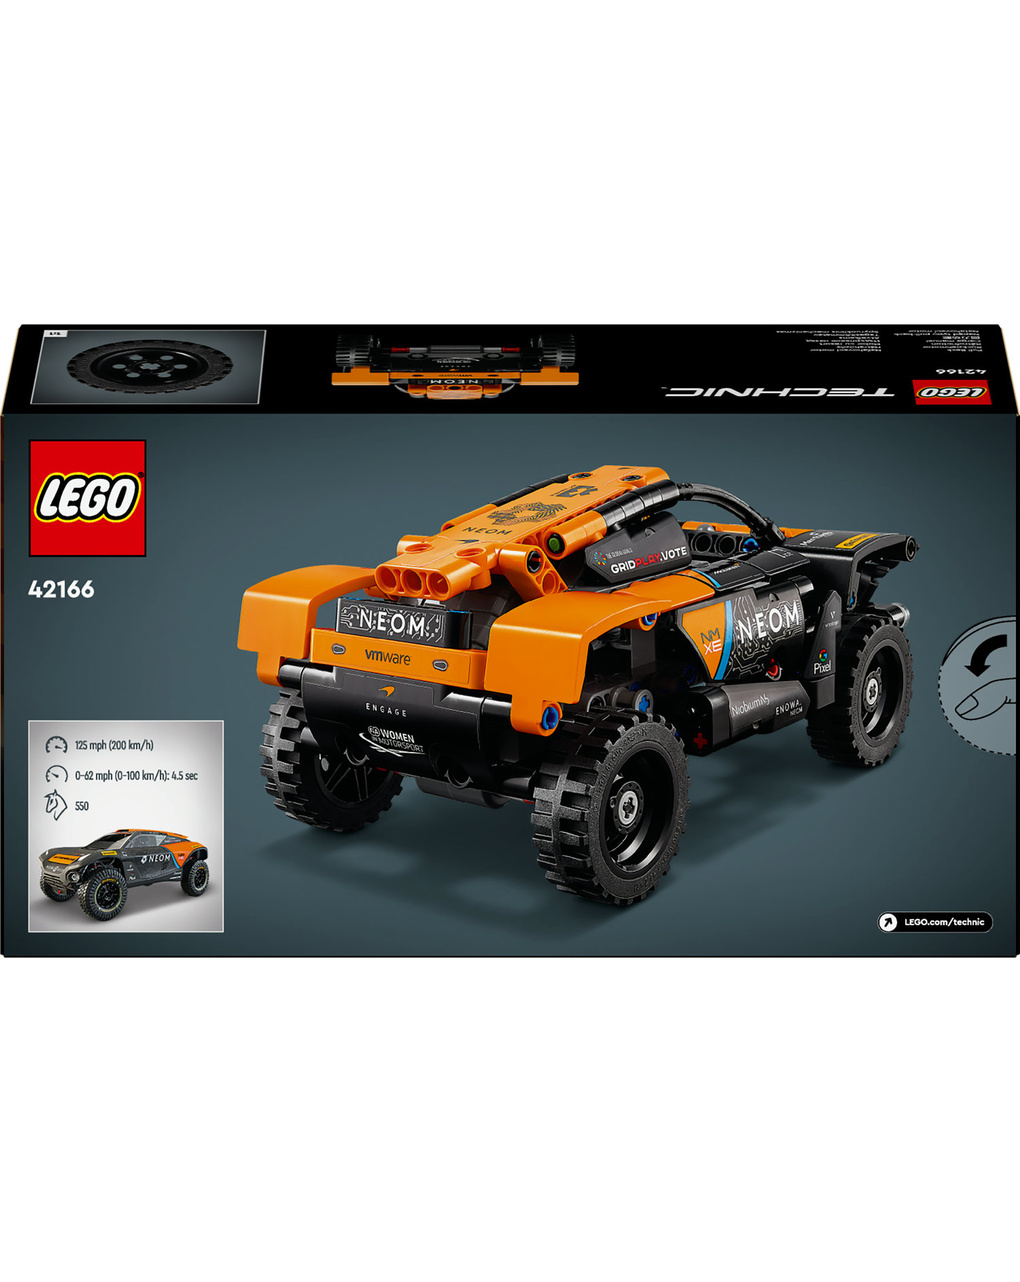 Neom mclaren extreme e coche de carreras - 42166 - lego technic - LEGO